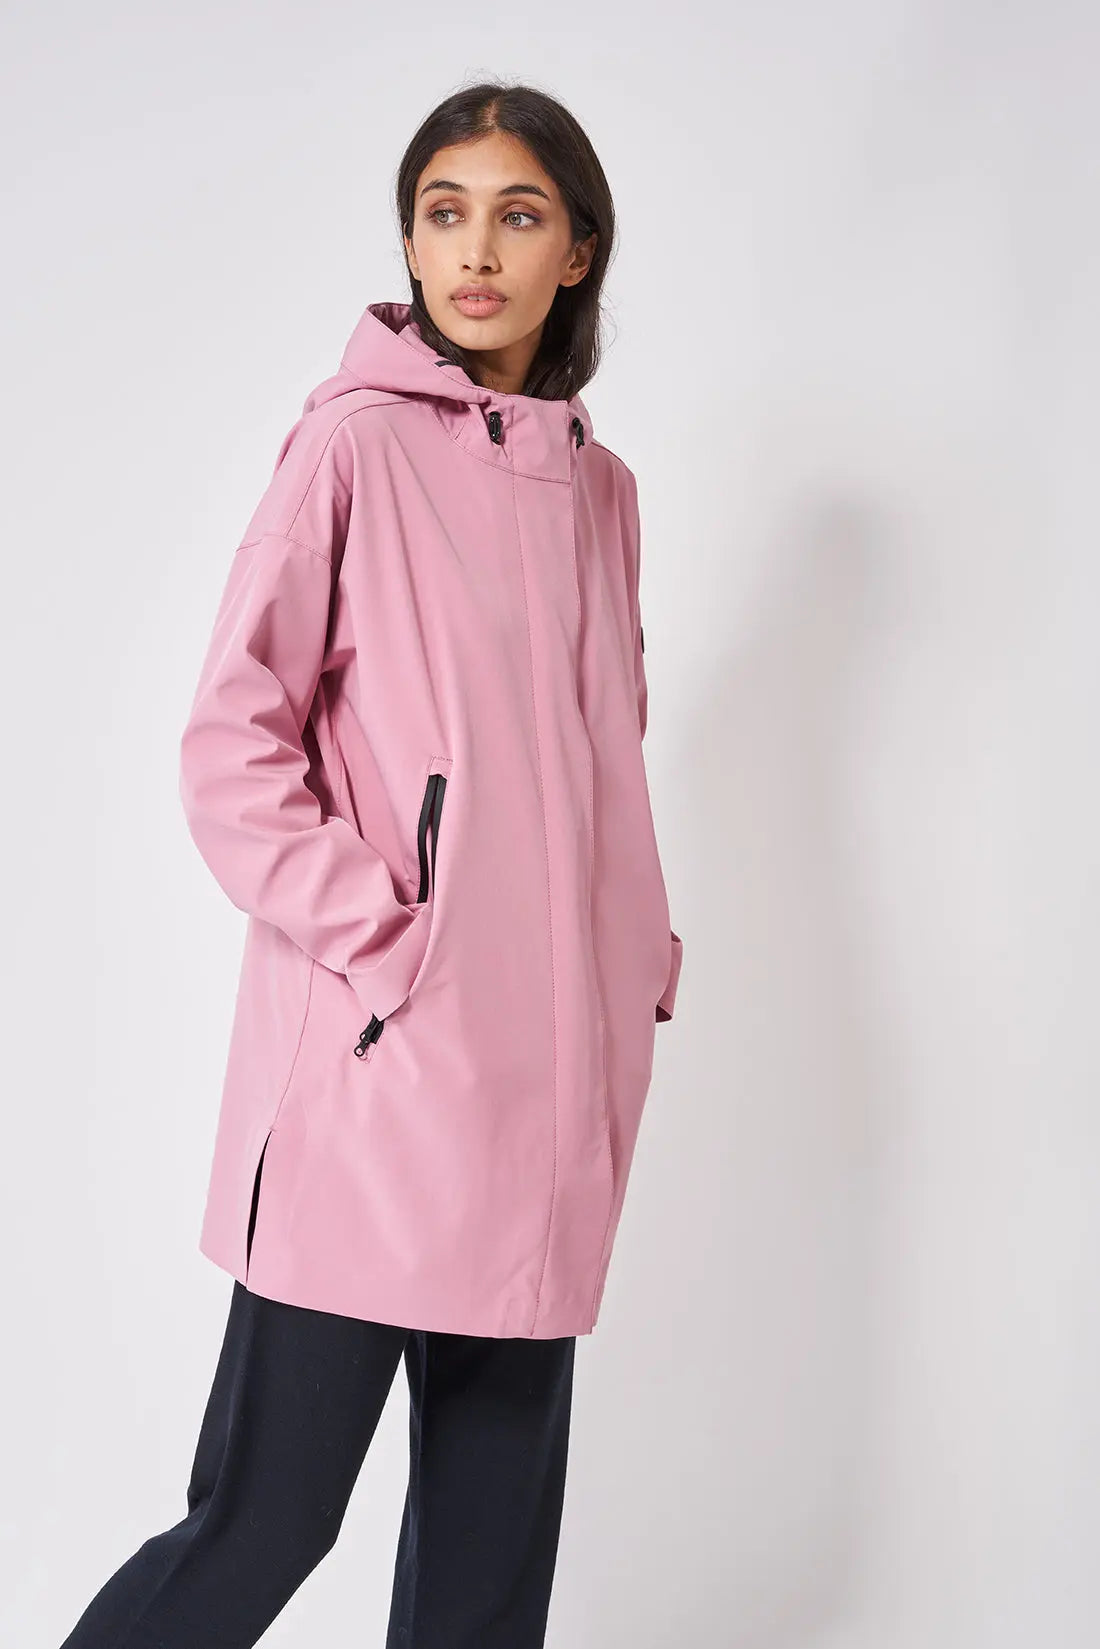 Chubasquero o impermeable largo de mujer Tantä. Color lila suave Plugim Foxglove – Rainwear